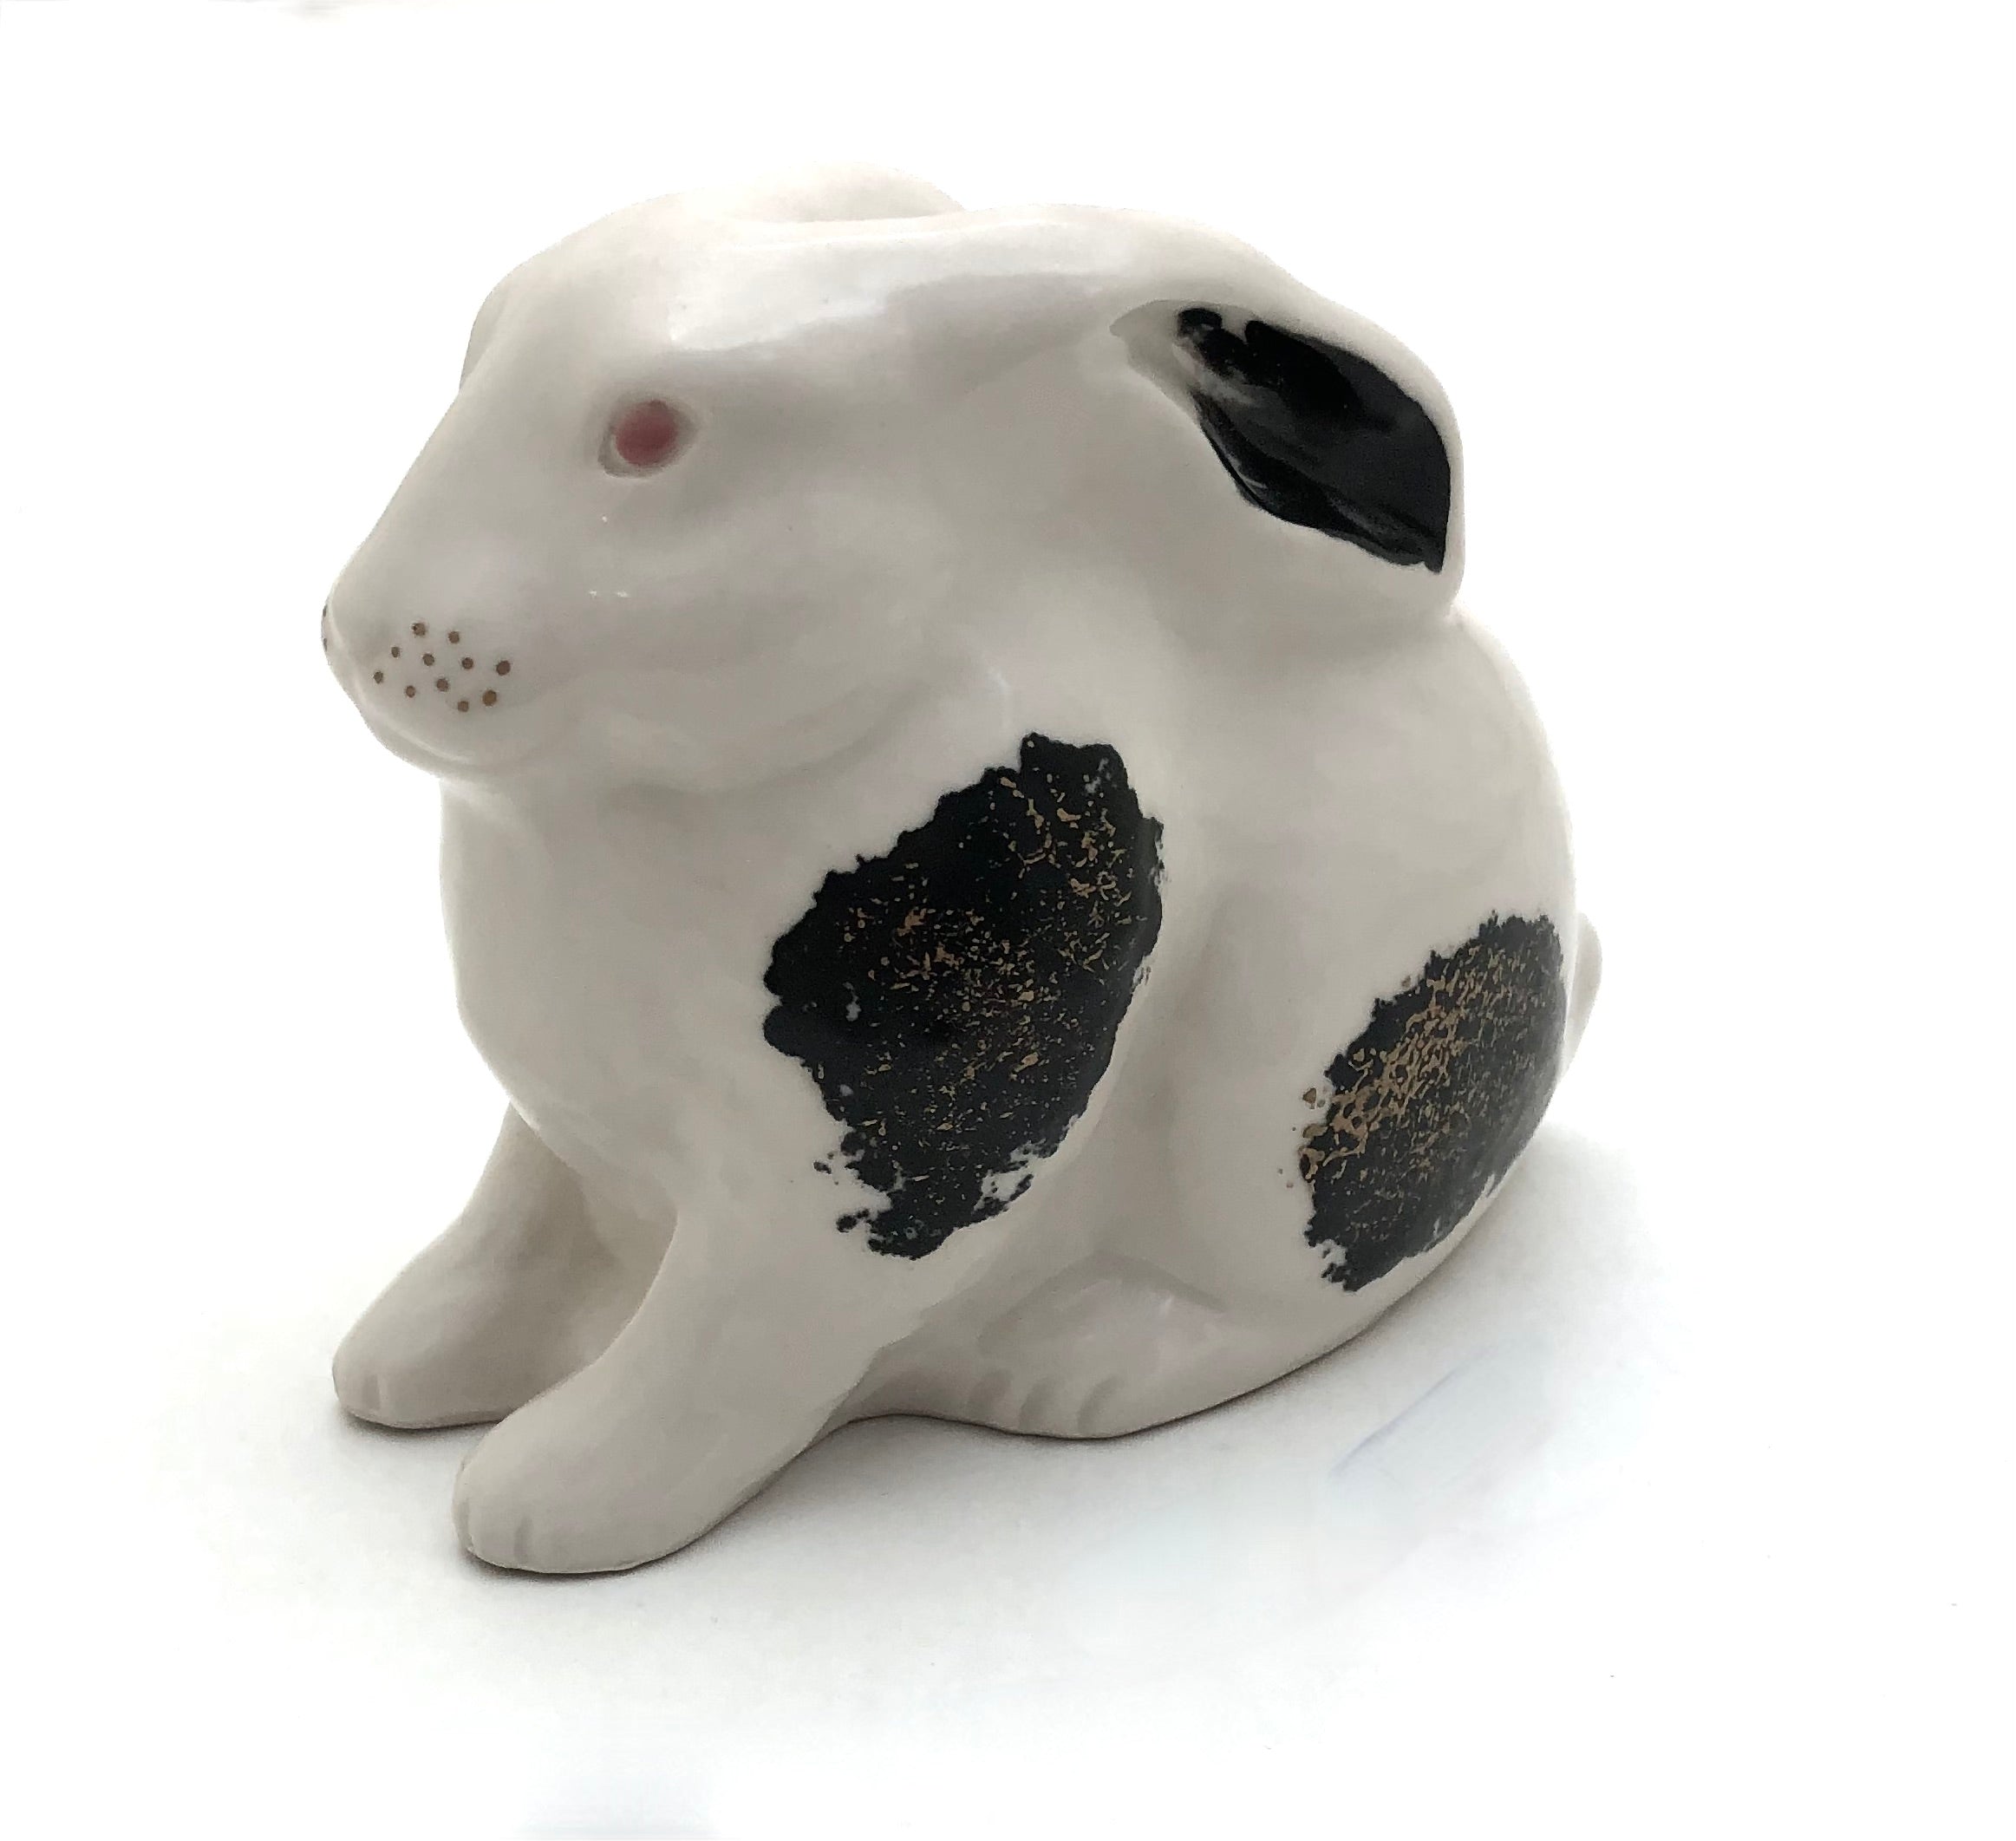 Japanese Vintage Satsuma Yaki Ceramic Rabbit with Black and Gold decoration by Heian Tachikichi